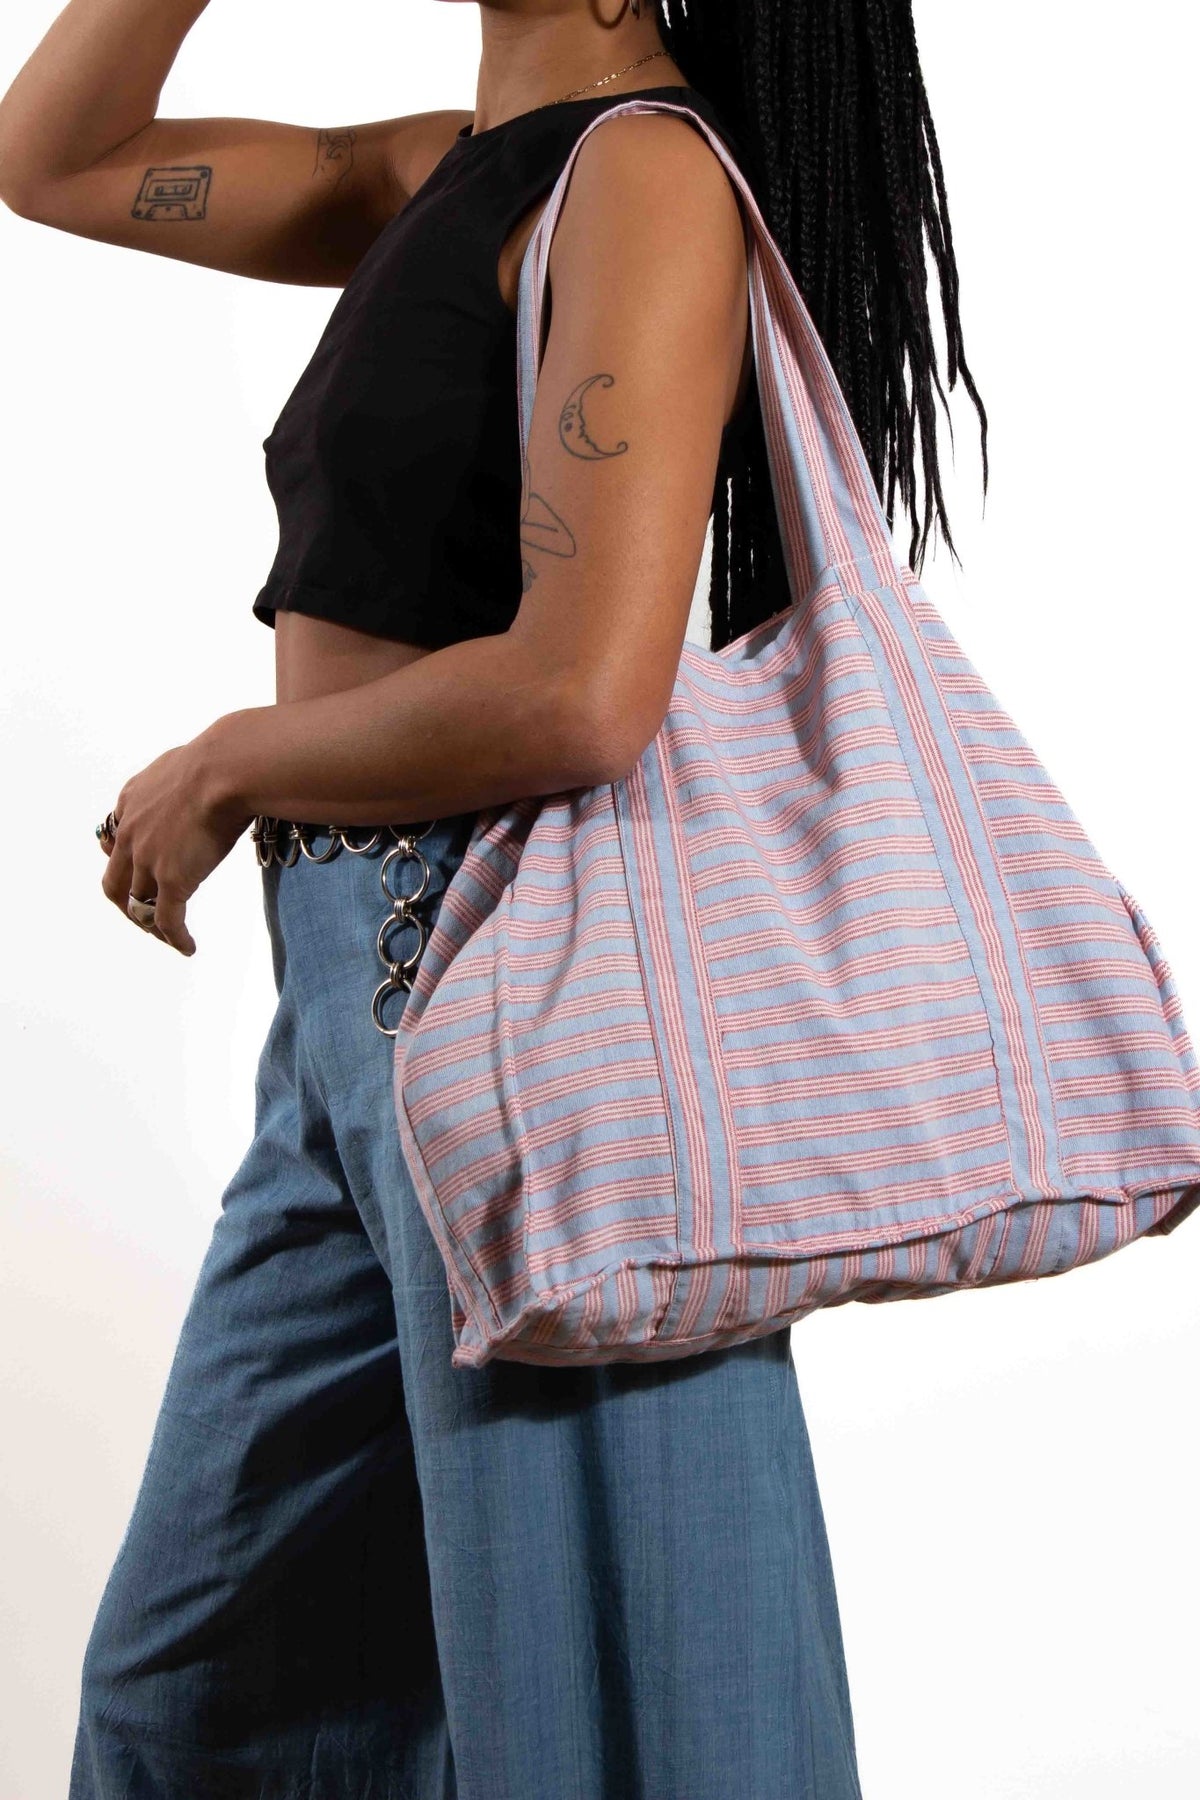 Tote Bag 1 - Sacs à main - Azaadi, la mode responsable accessible